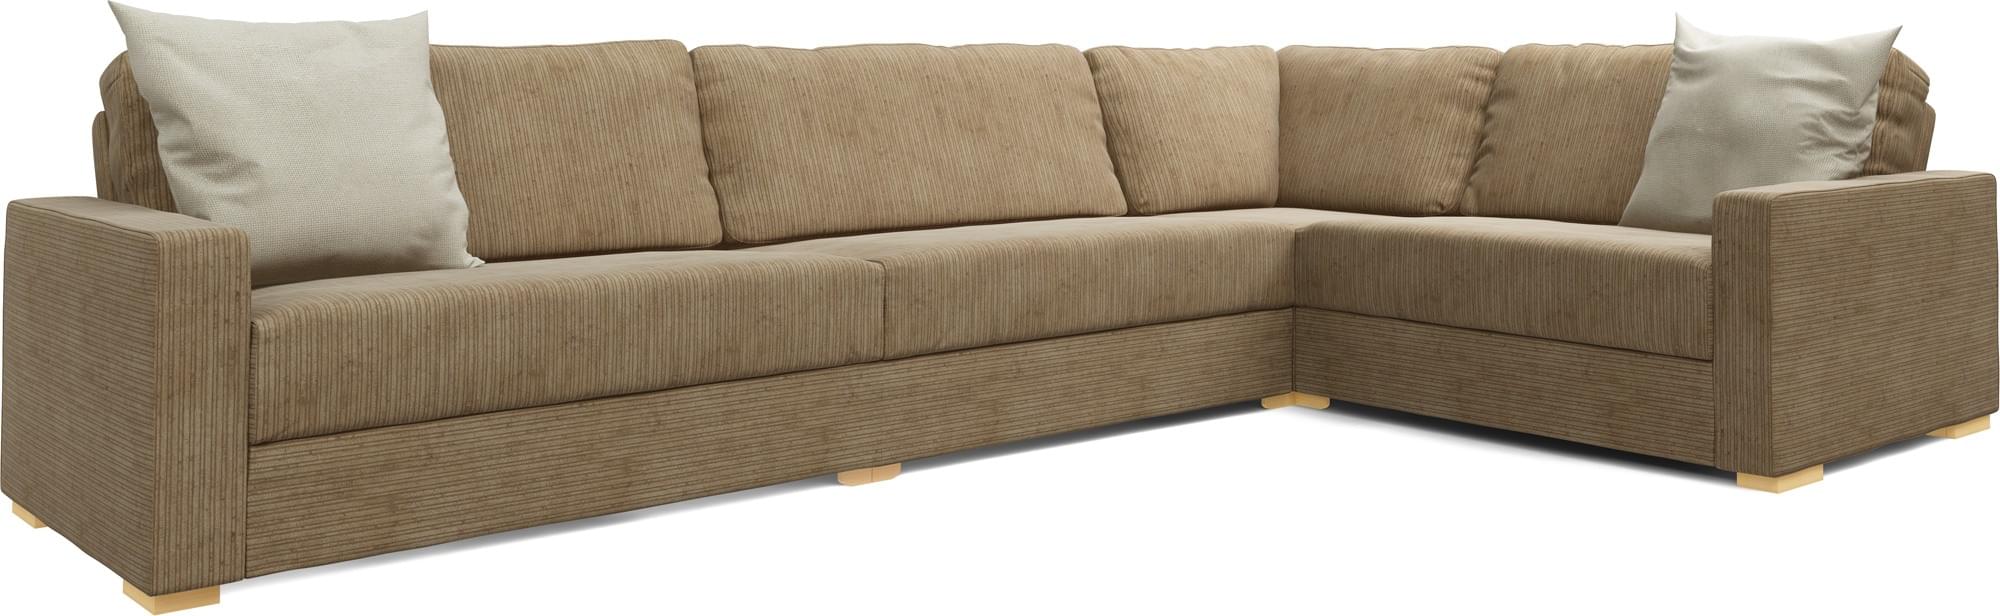 Xan 3X2 Corner Single Sofa Bed